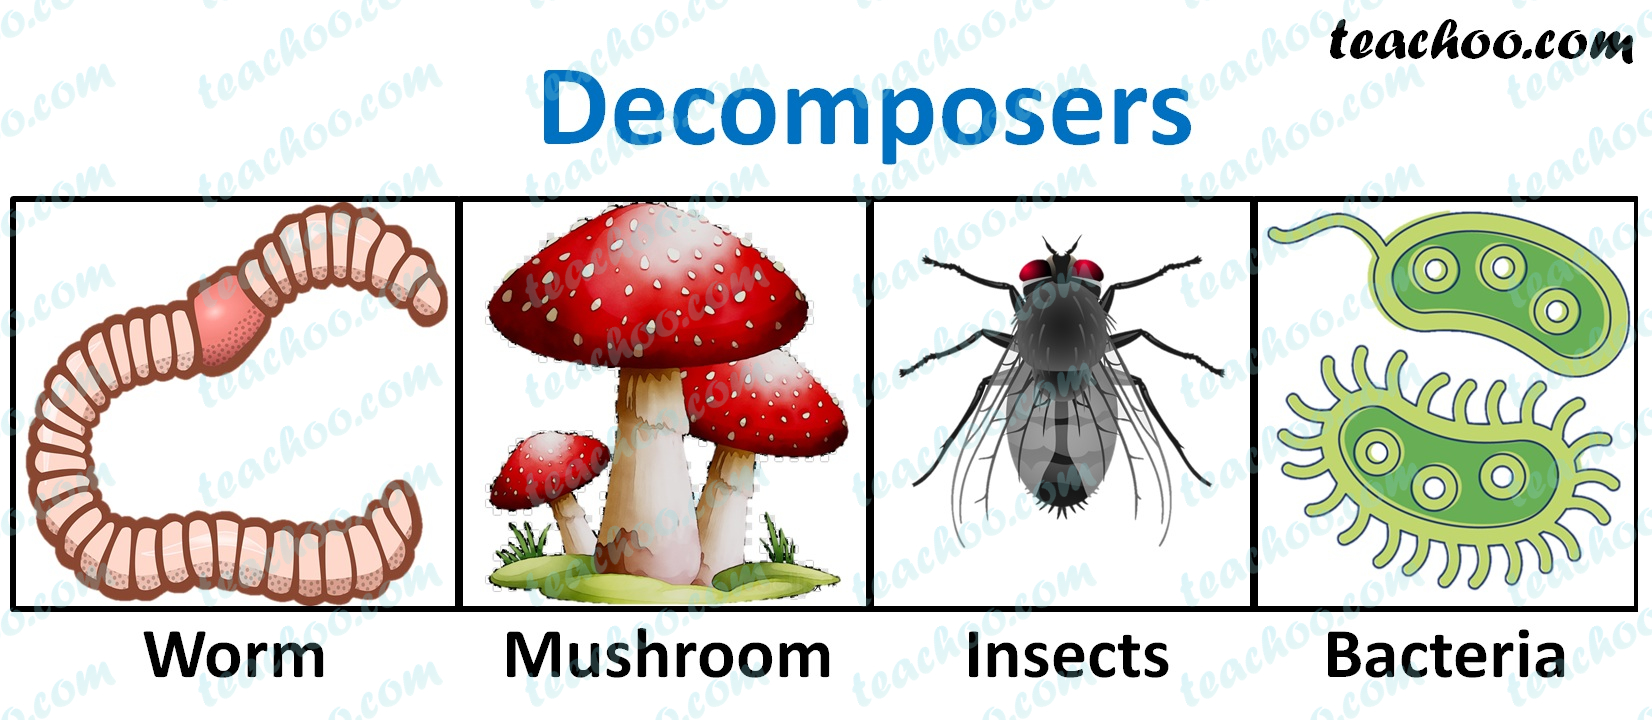 decomposers---teachoo.jpg